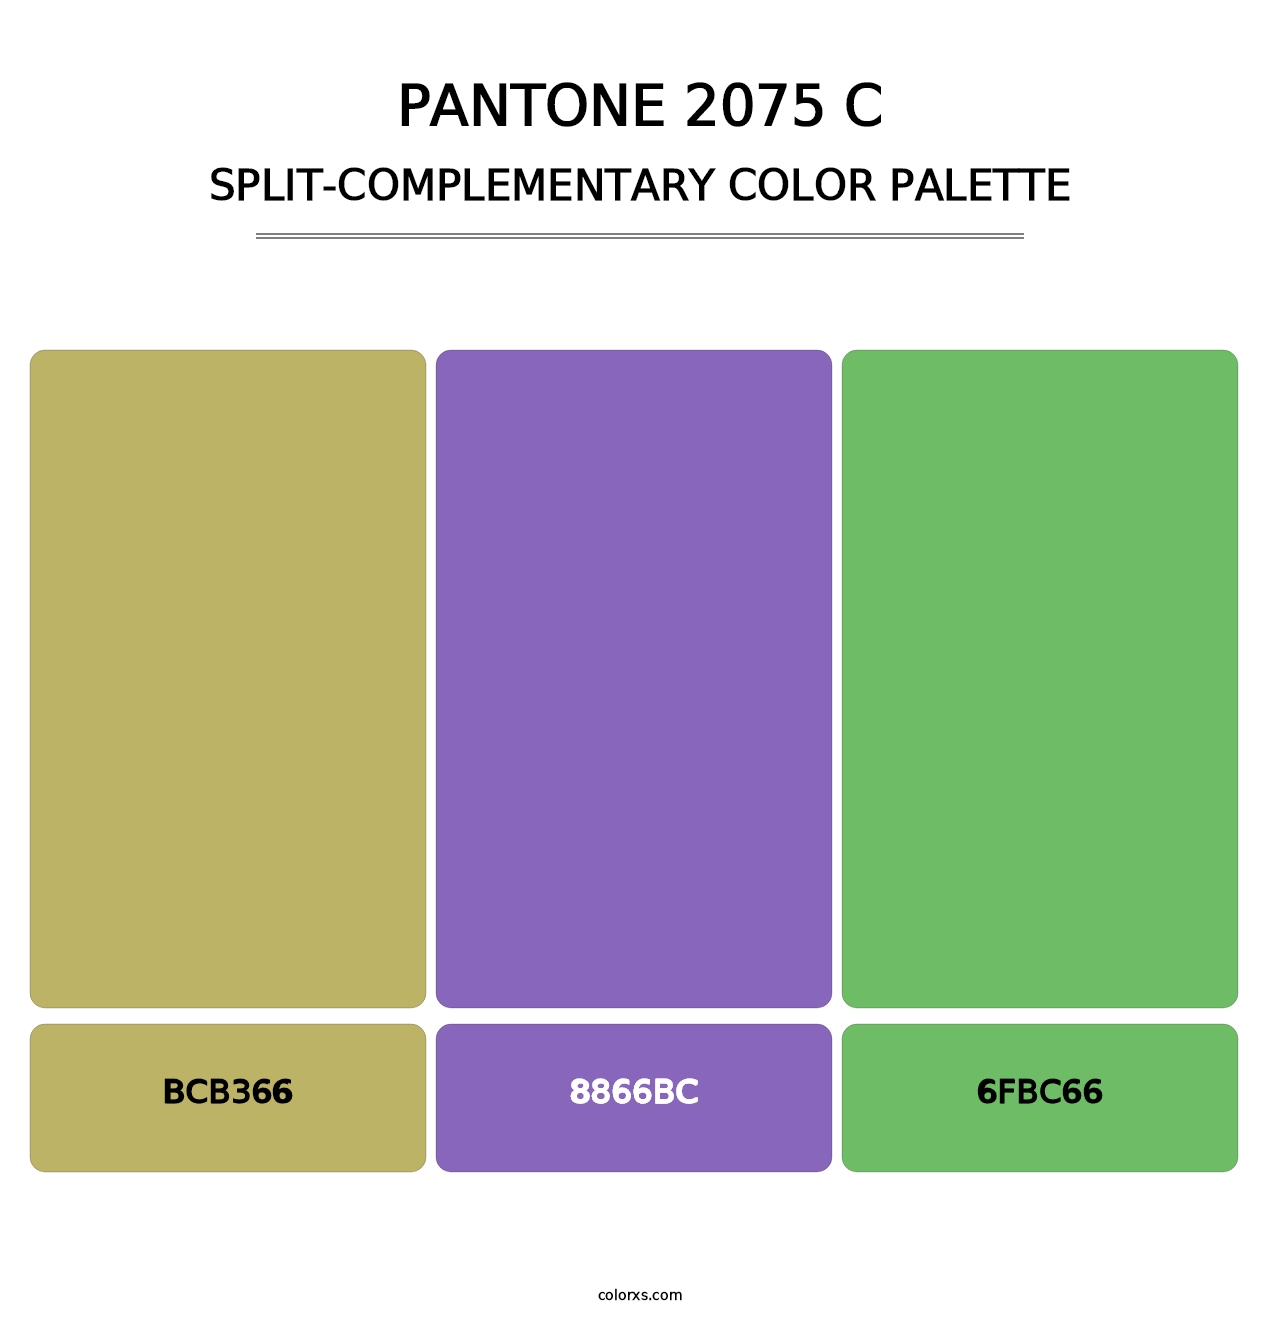 PANTONE 2075 C - Split-Complementary Color Palette